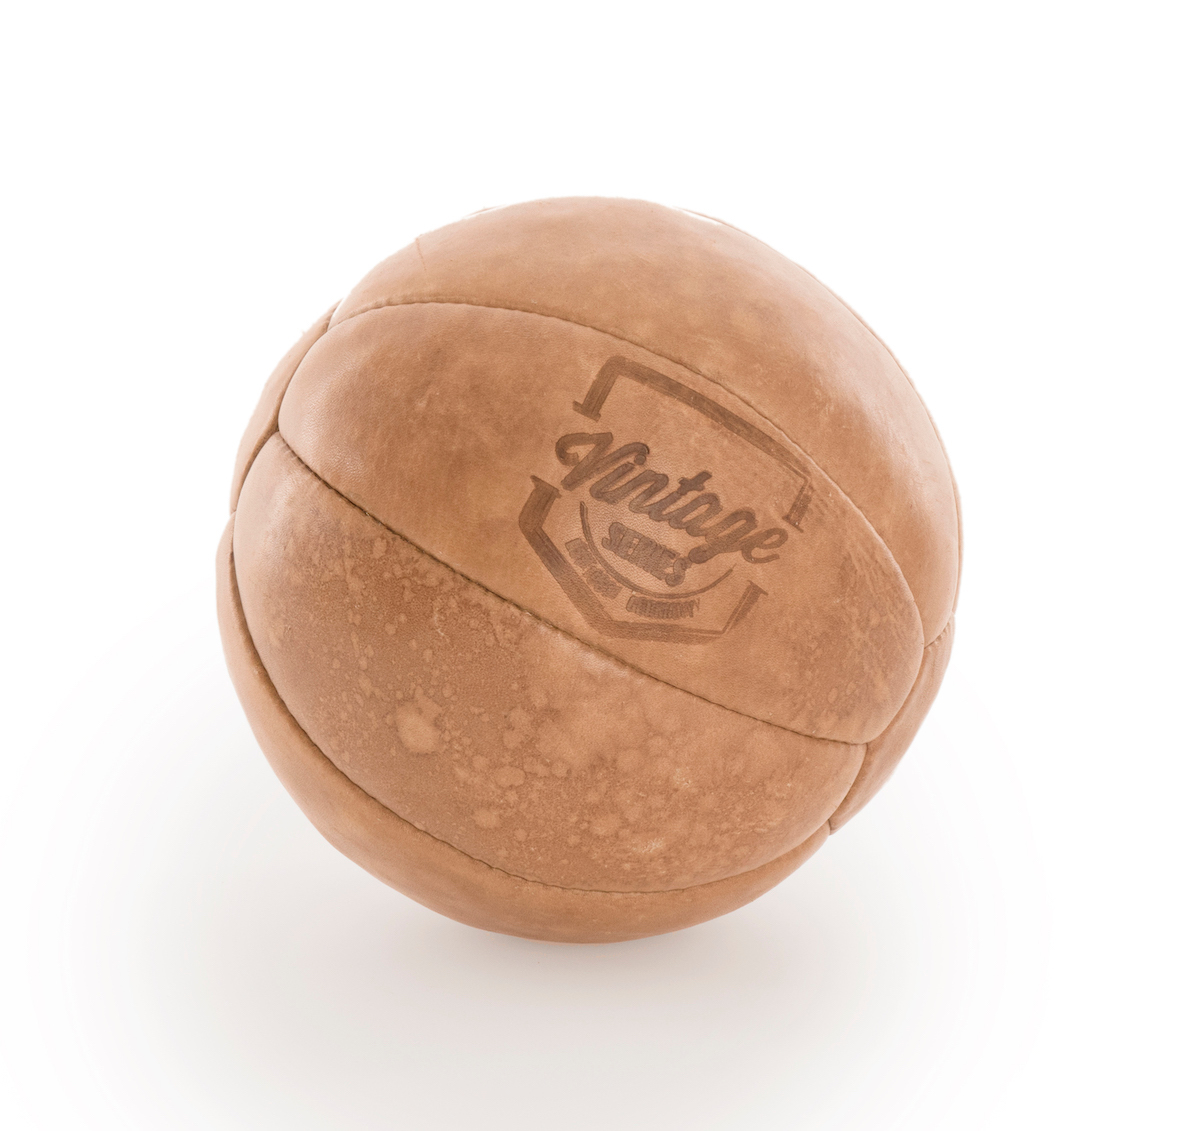 Medizinball - Wie damals! 1 kg, 18 bis 20 cm